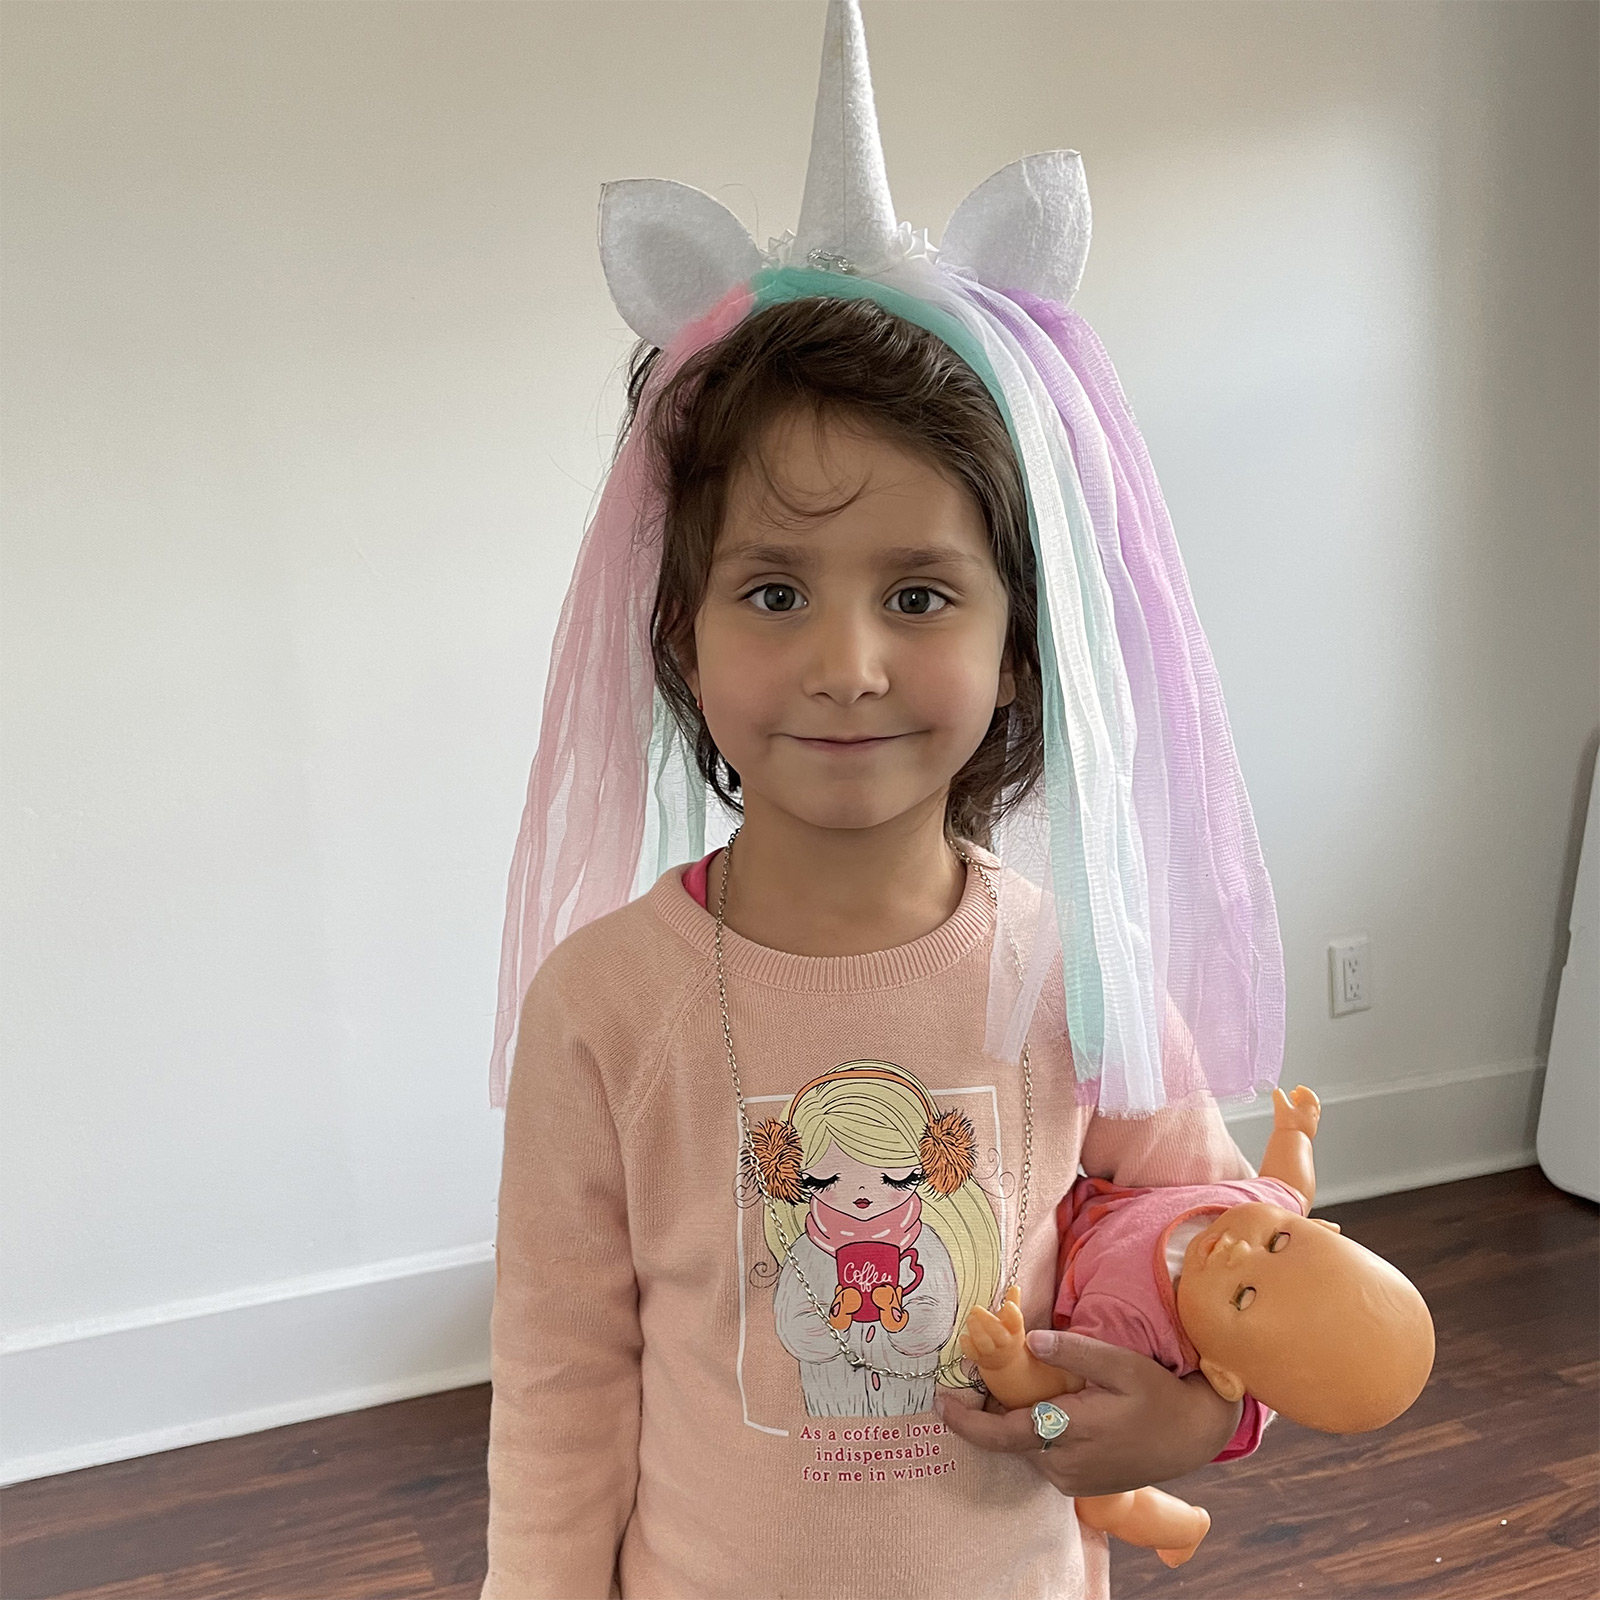 Rajwa holding a doll, wearing a unicorn headband